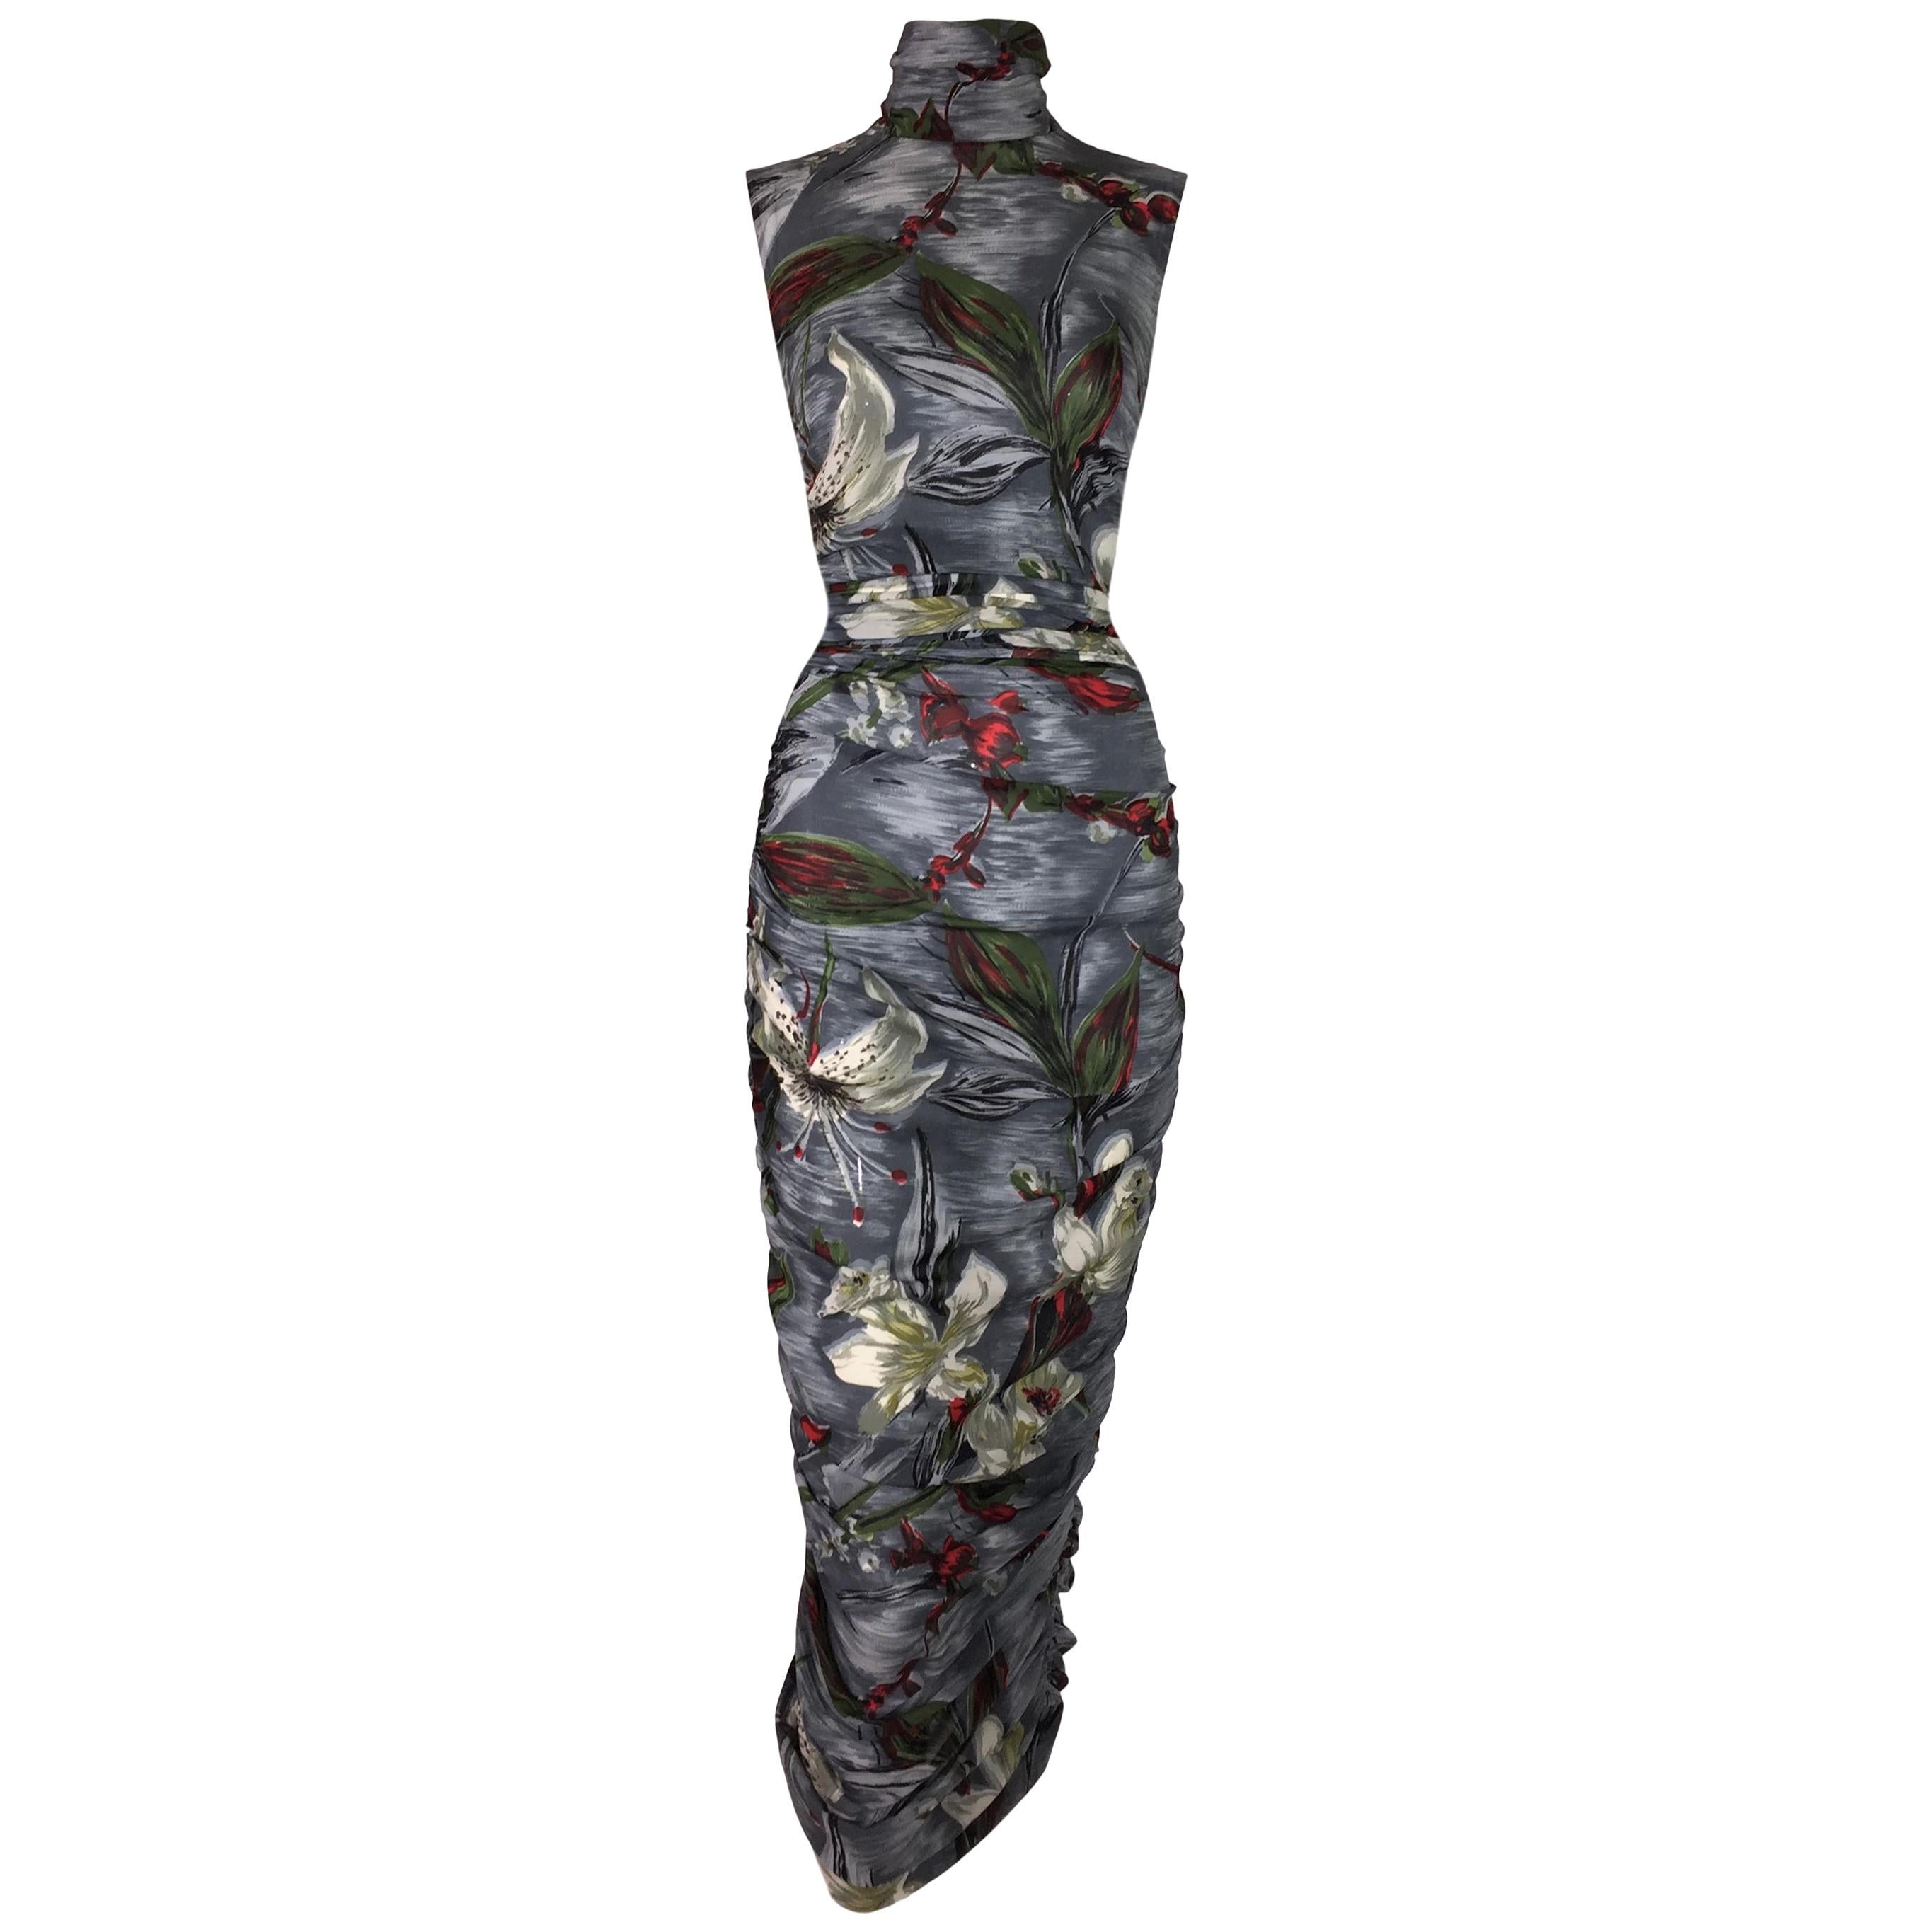 S/S 2001 Dolce & Gabbana Runway Semi-Sheer Gray Silk Ruched Wiggle Dress